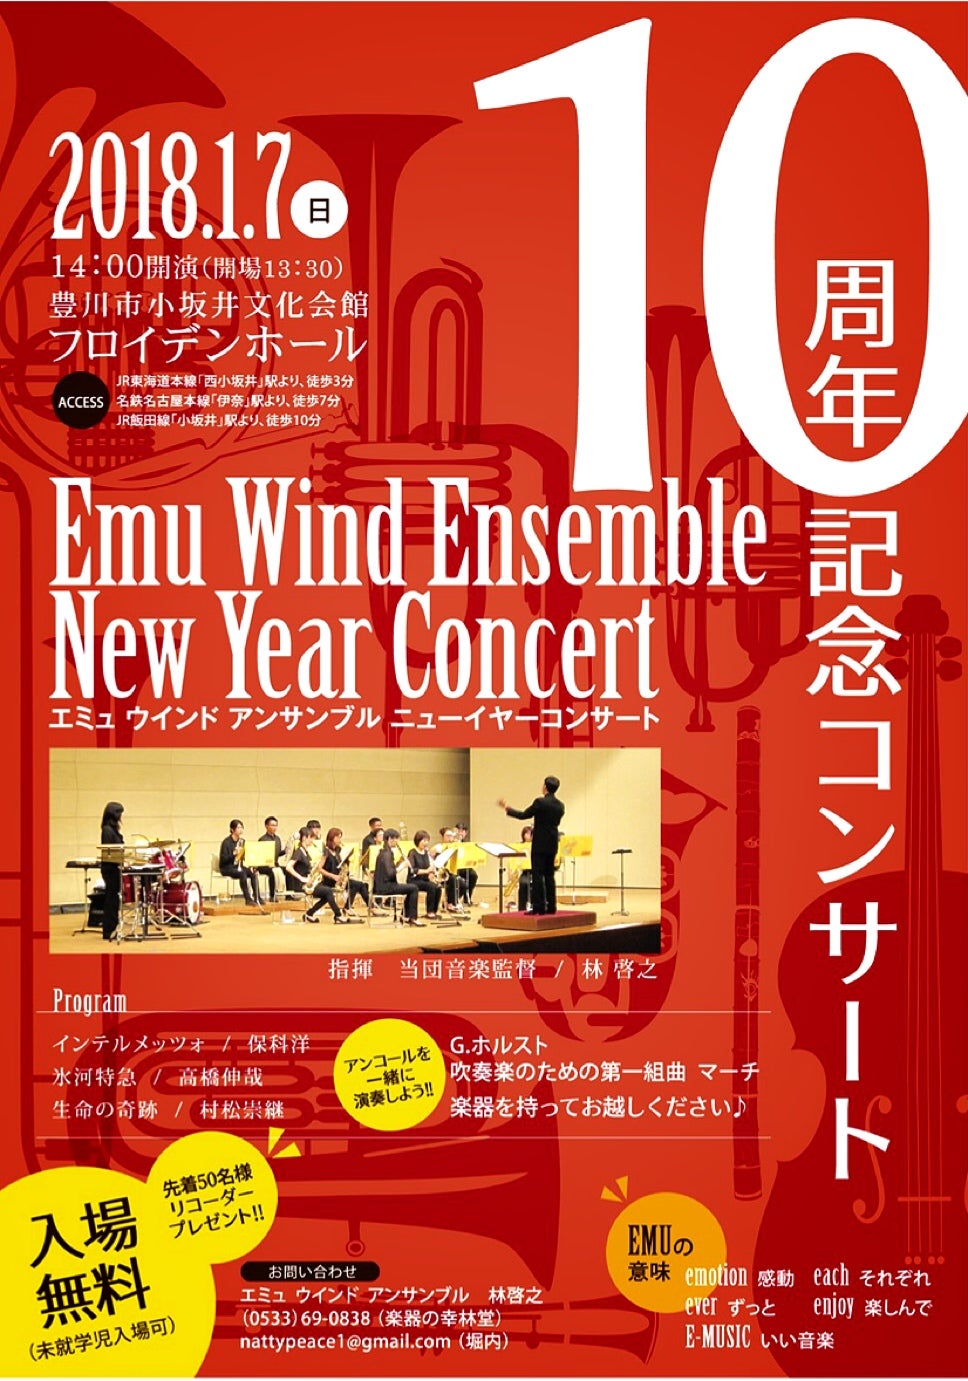 エミュ10周年コンサートのお知らせ エミュウインドアンサンブルの公式ブログ